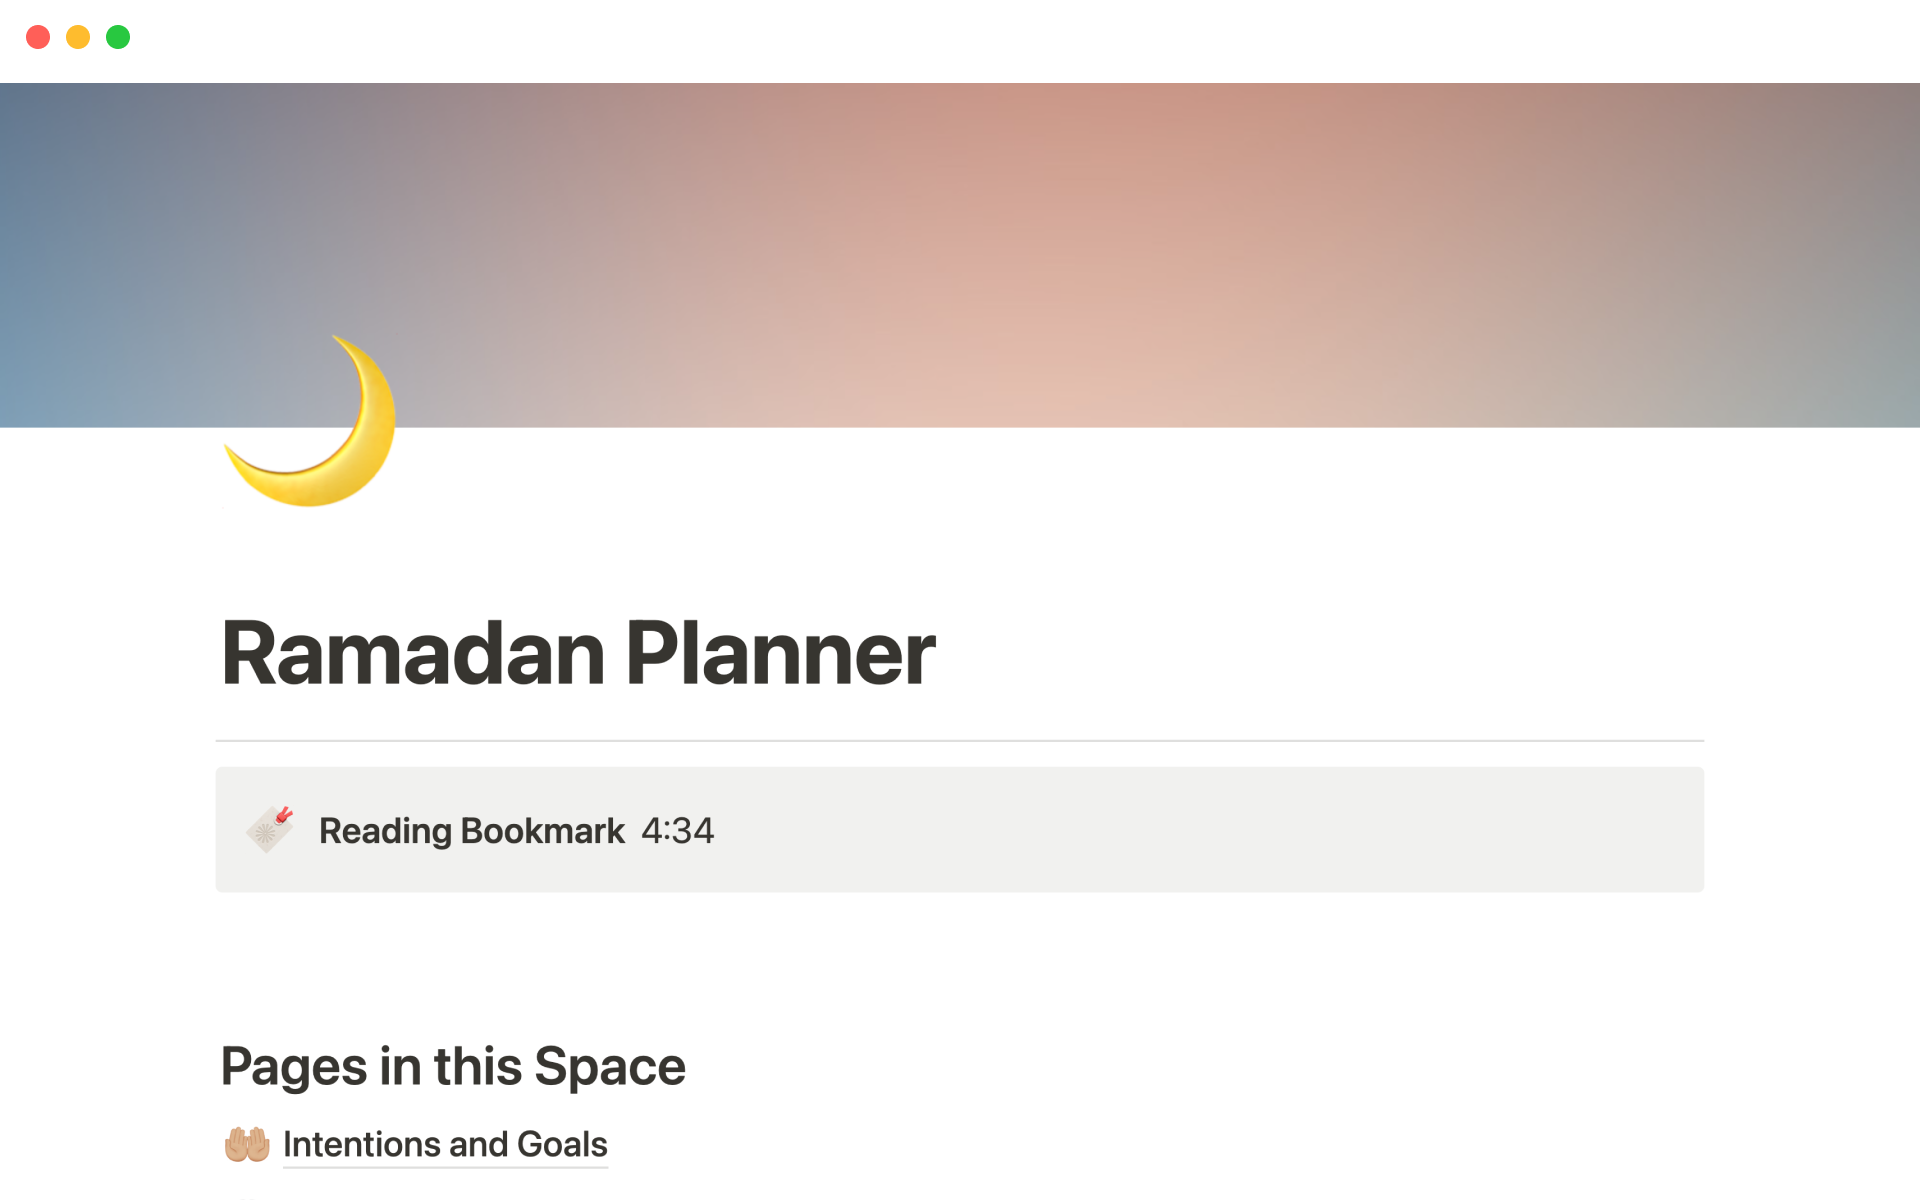 Vista previa de plantilla para Ramadan Planner